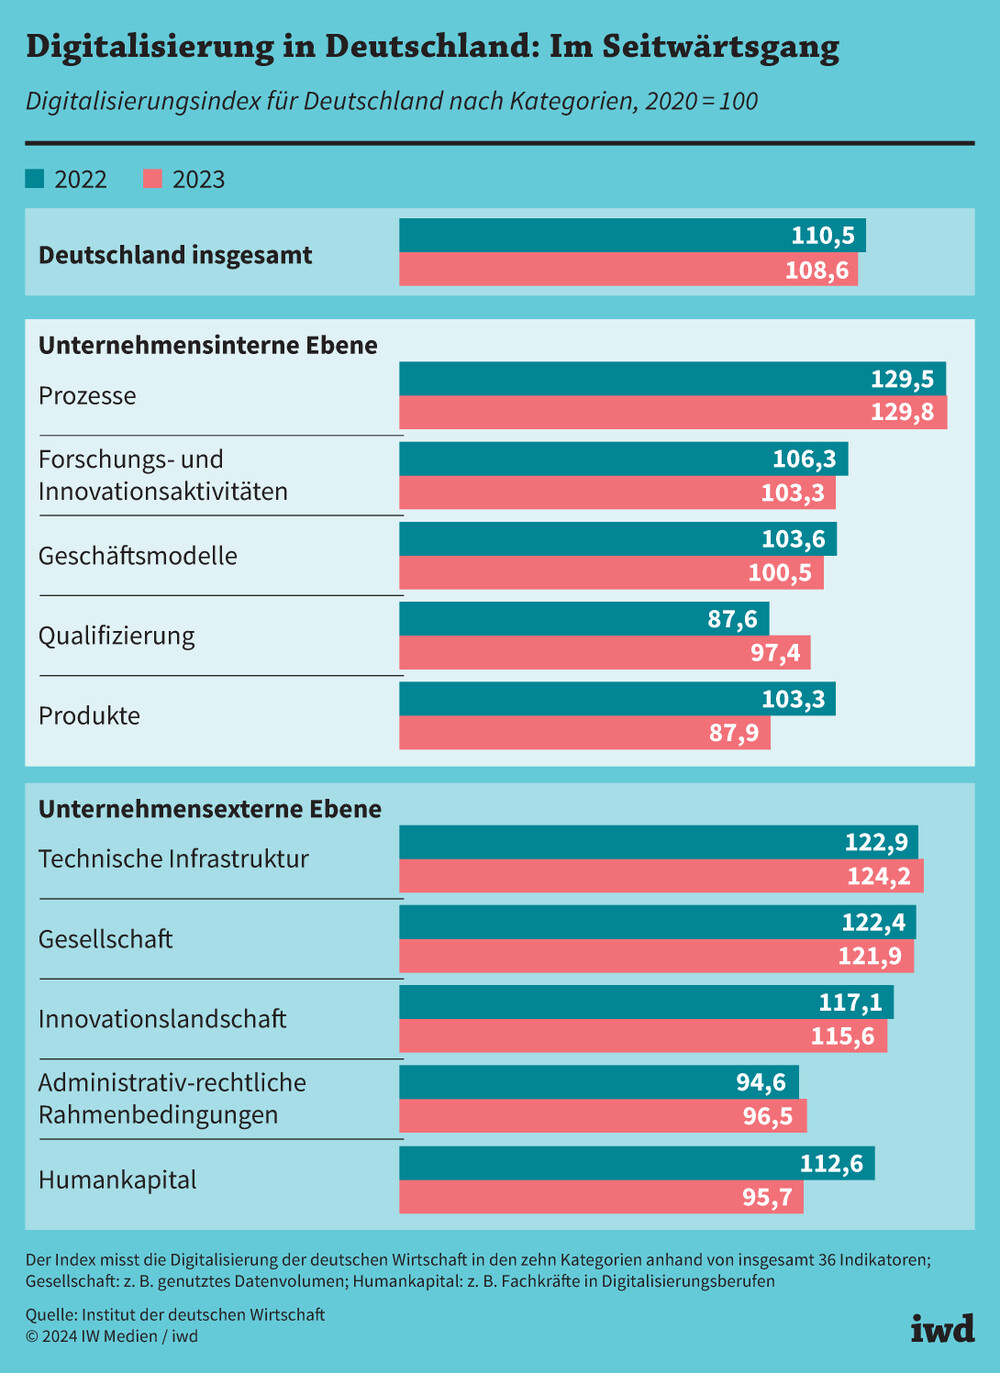 Digitalisierungsindex für Deutschland analysiert für 10 verschiedene Kategorien